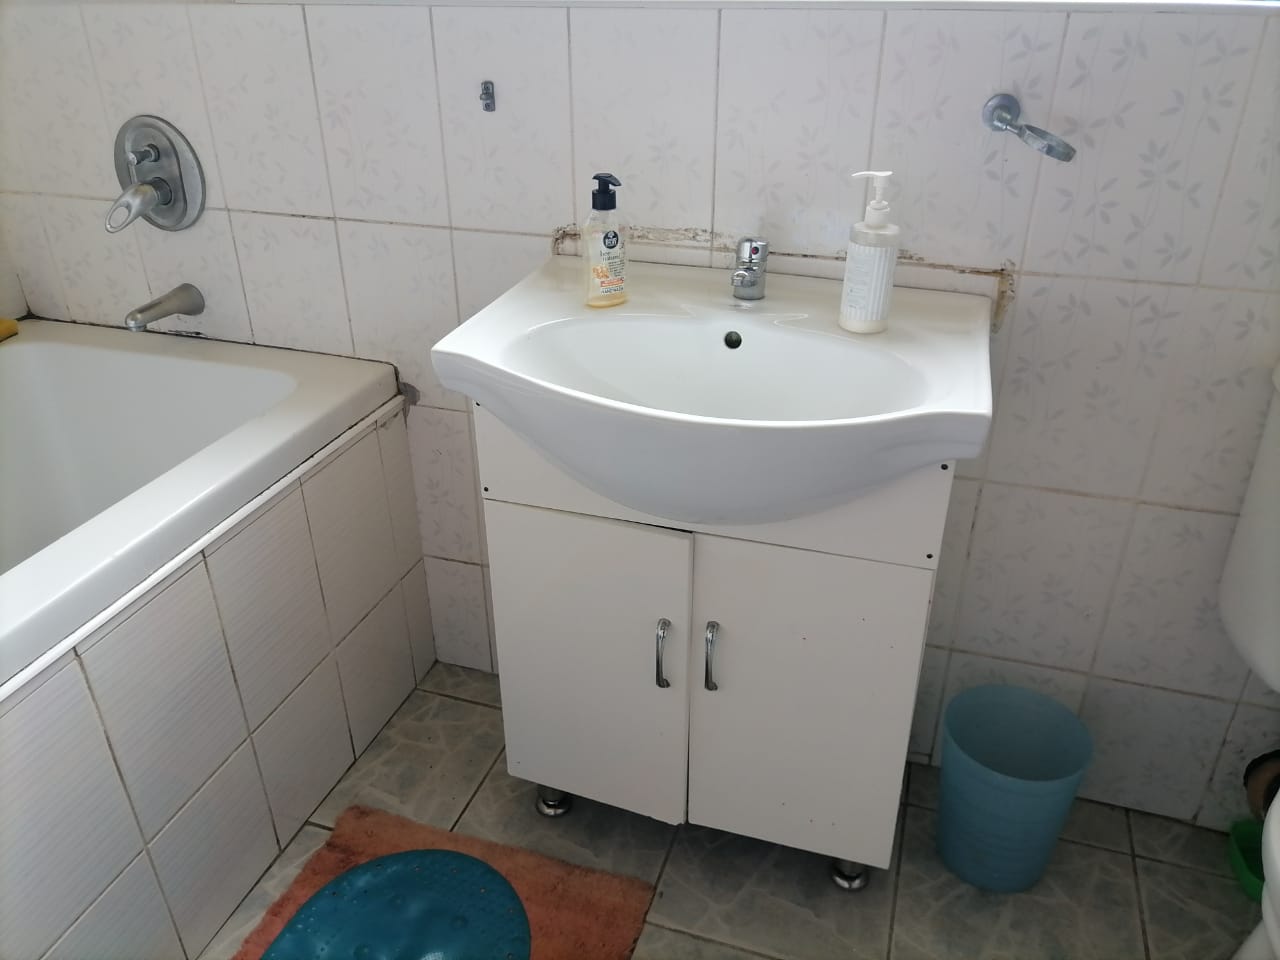 To Let 1 Bedroom Property for Rent in Umbilo KwaZulu-Natal